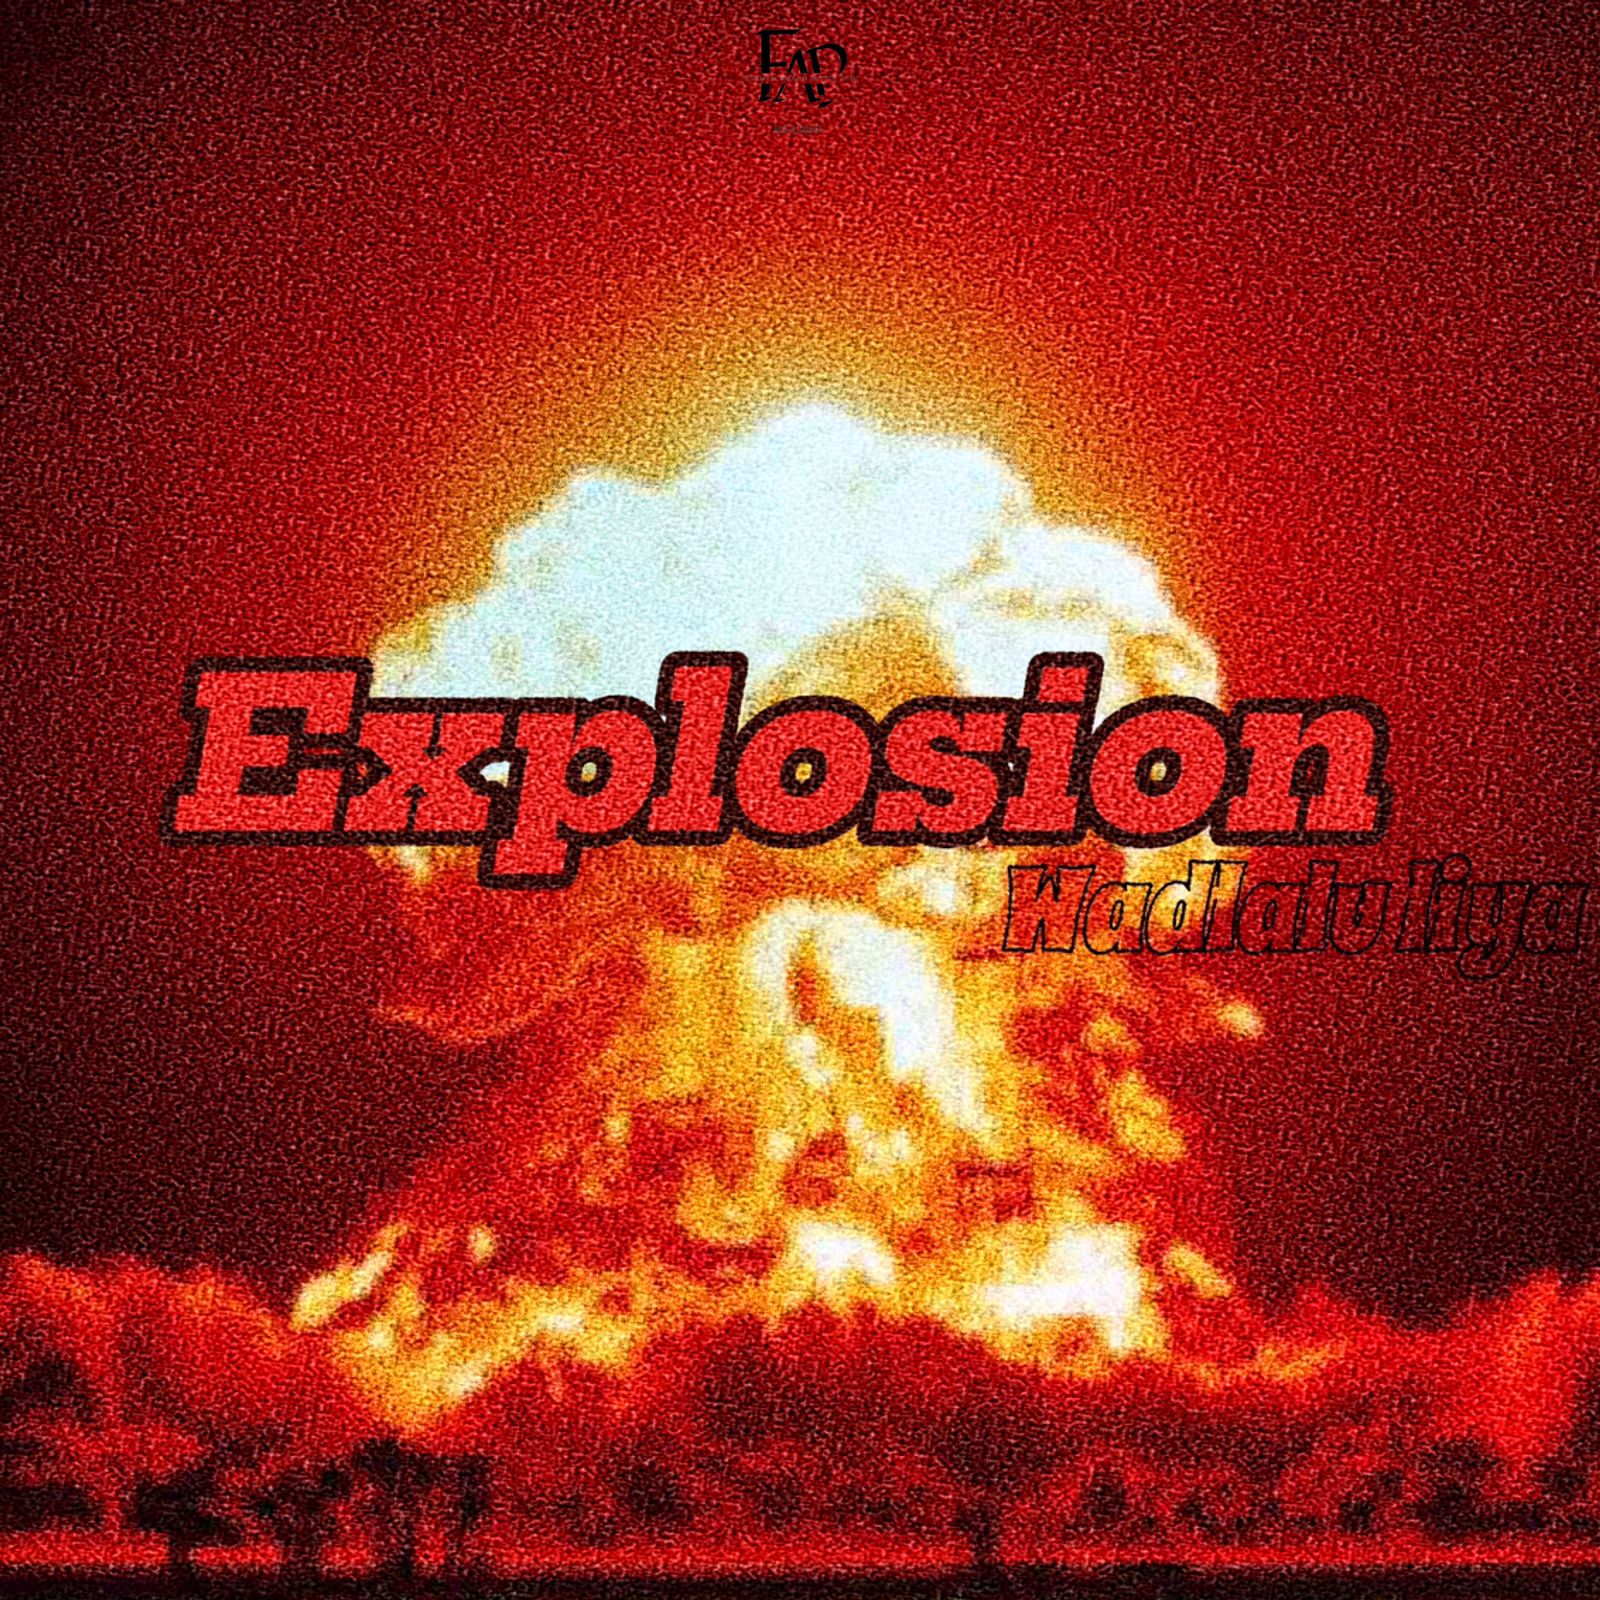 Explosion - Wadlalu Liiya